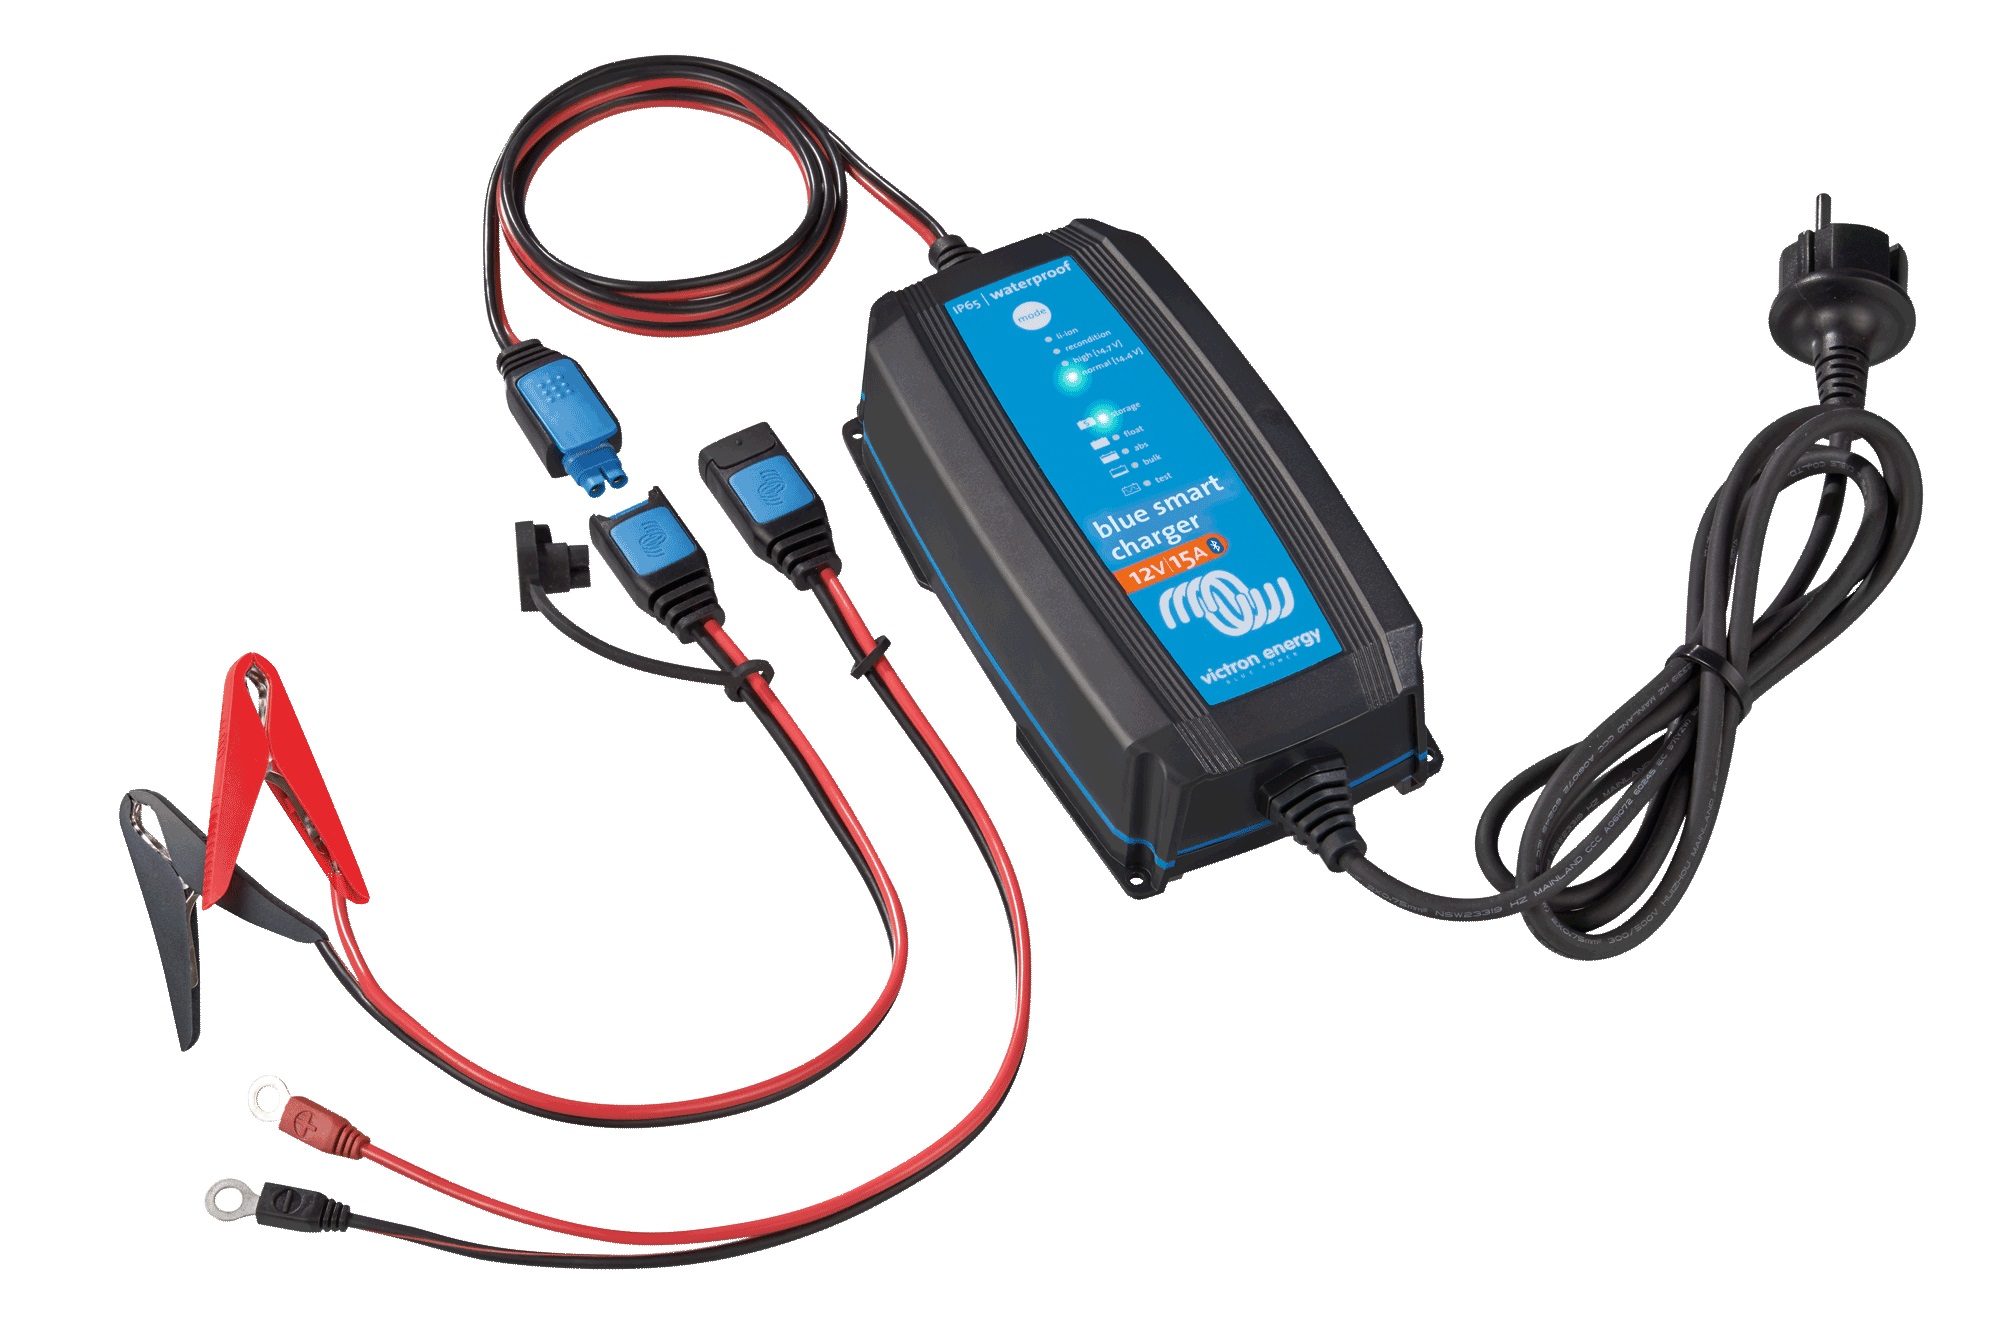 Victron Blue Smart IP65 12/15 Bluetooth Ladegerät 12V 15A für Blei und Lithium Akkus